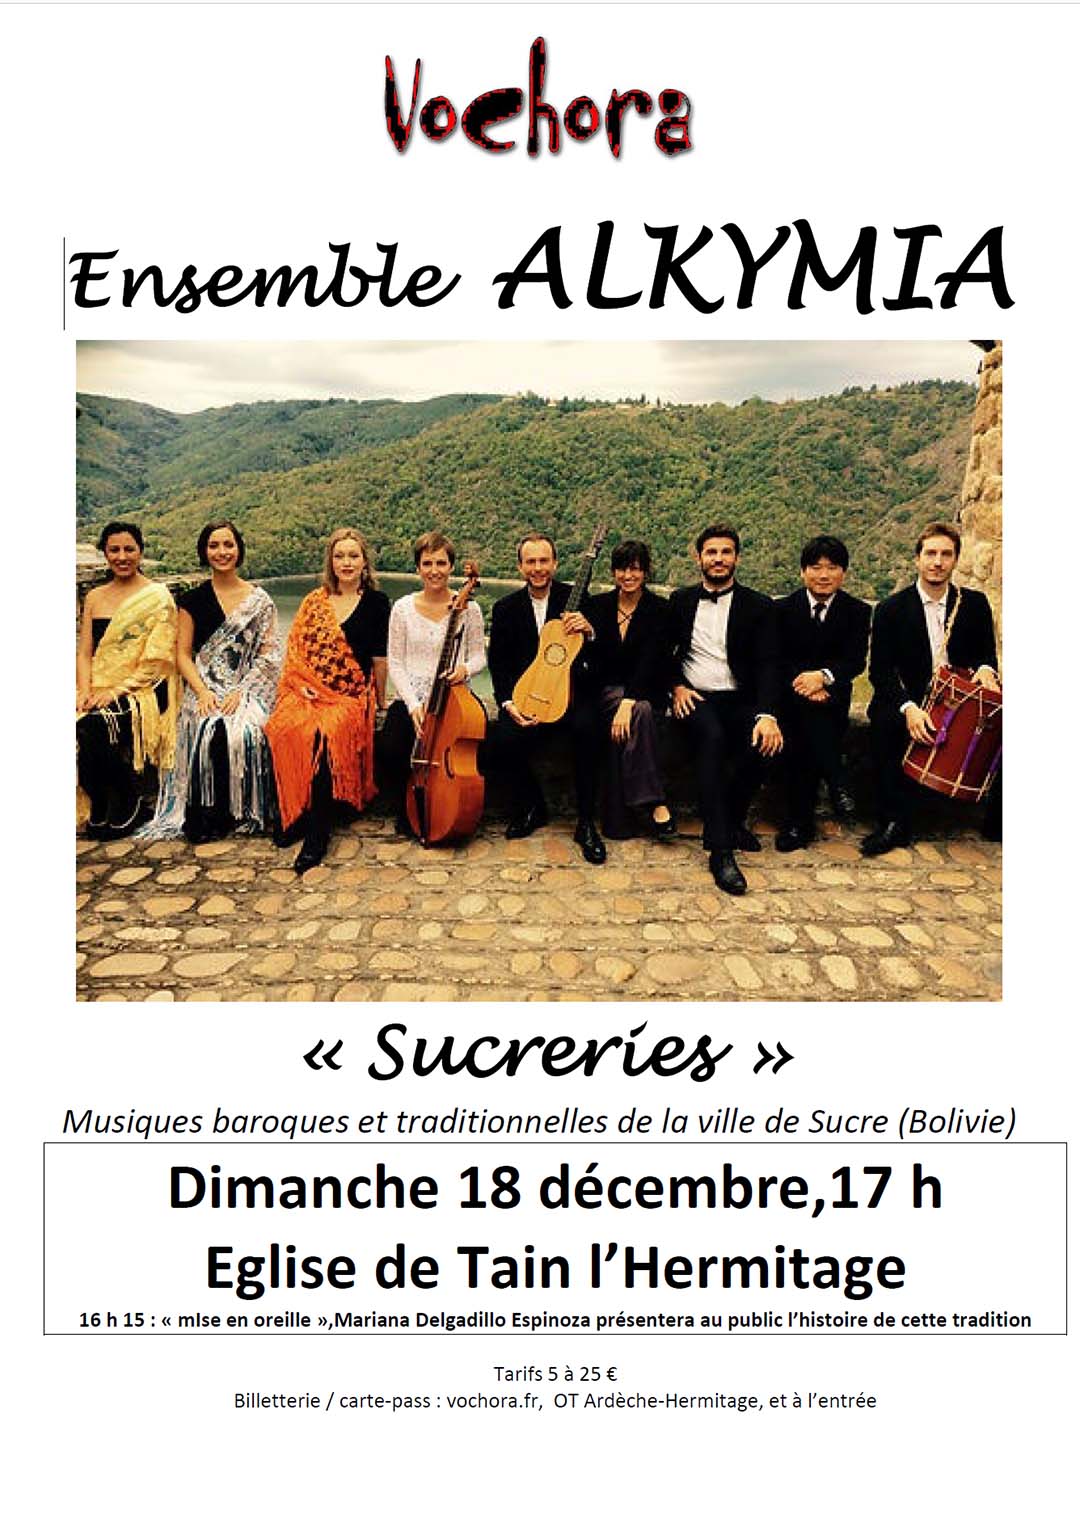 CONCERT VOCHORA : Ensemble ALKYMIA. Musiques baroques et traditionnelles de la ville de Sucre (bolivie). Dimanche 18 décembre à 17h. Eglise de Tain l'Hermitage.